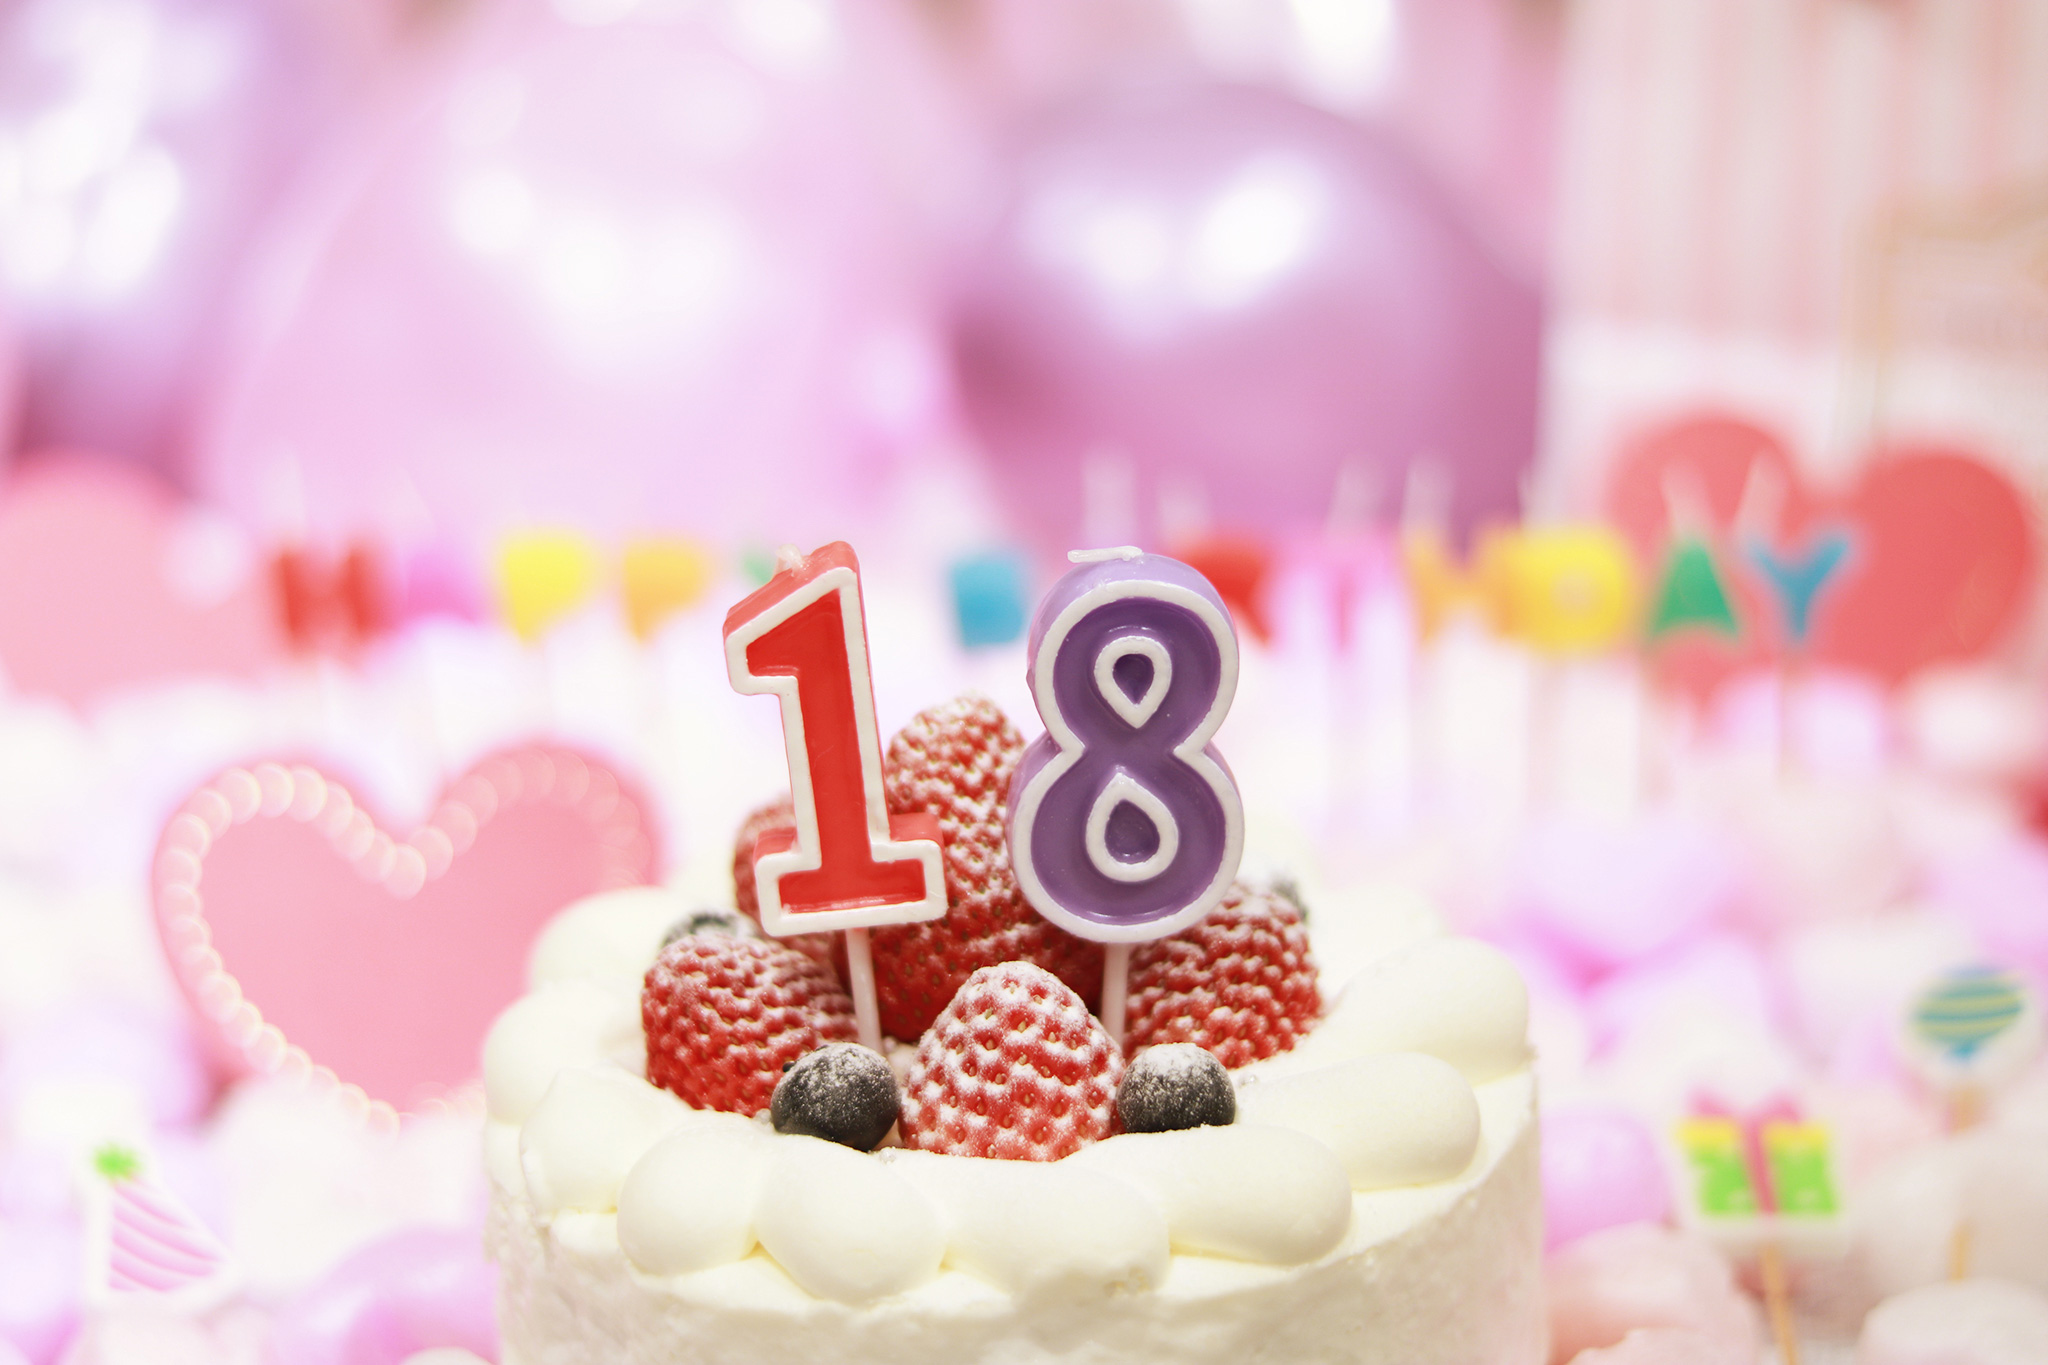 オシャレな誕生日画像 可愛いケーキとキャンドルでお祝い 18歳編 のフリー画像 おしゃれなフリー写真素材 Girly Drop